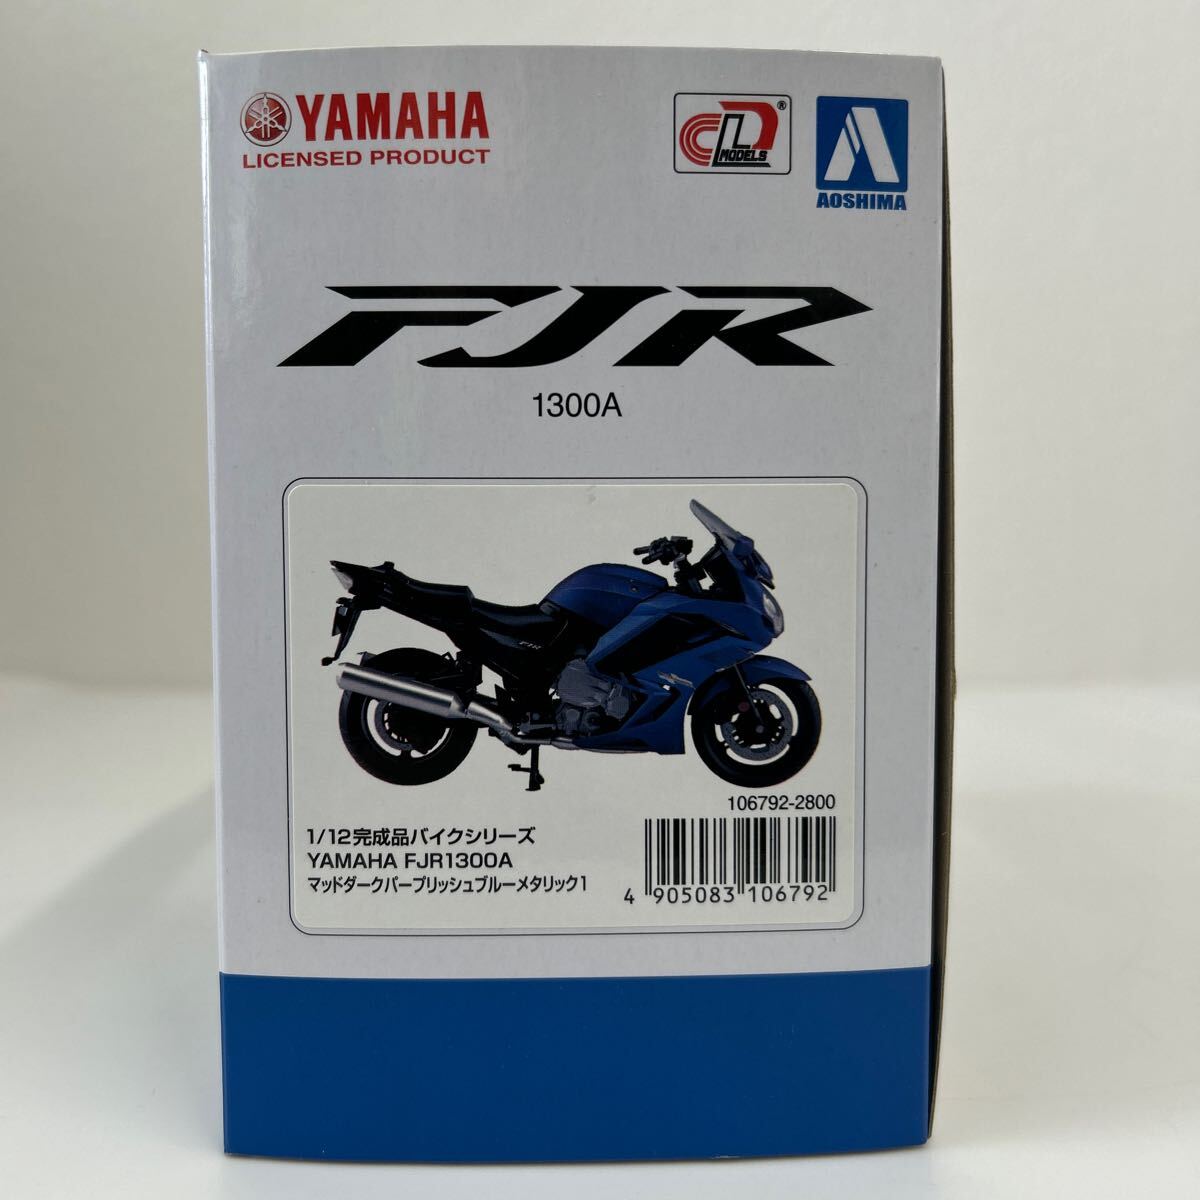  Aoshima 1/12 YAMAHA FJR1300A грязь темный pa-plishu голубой металлик конечный продукт мотоцикл Yamaha FJR миникар модель машина 